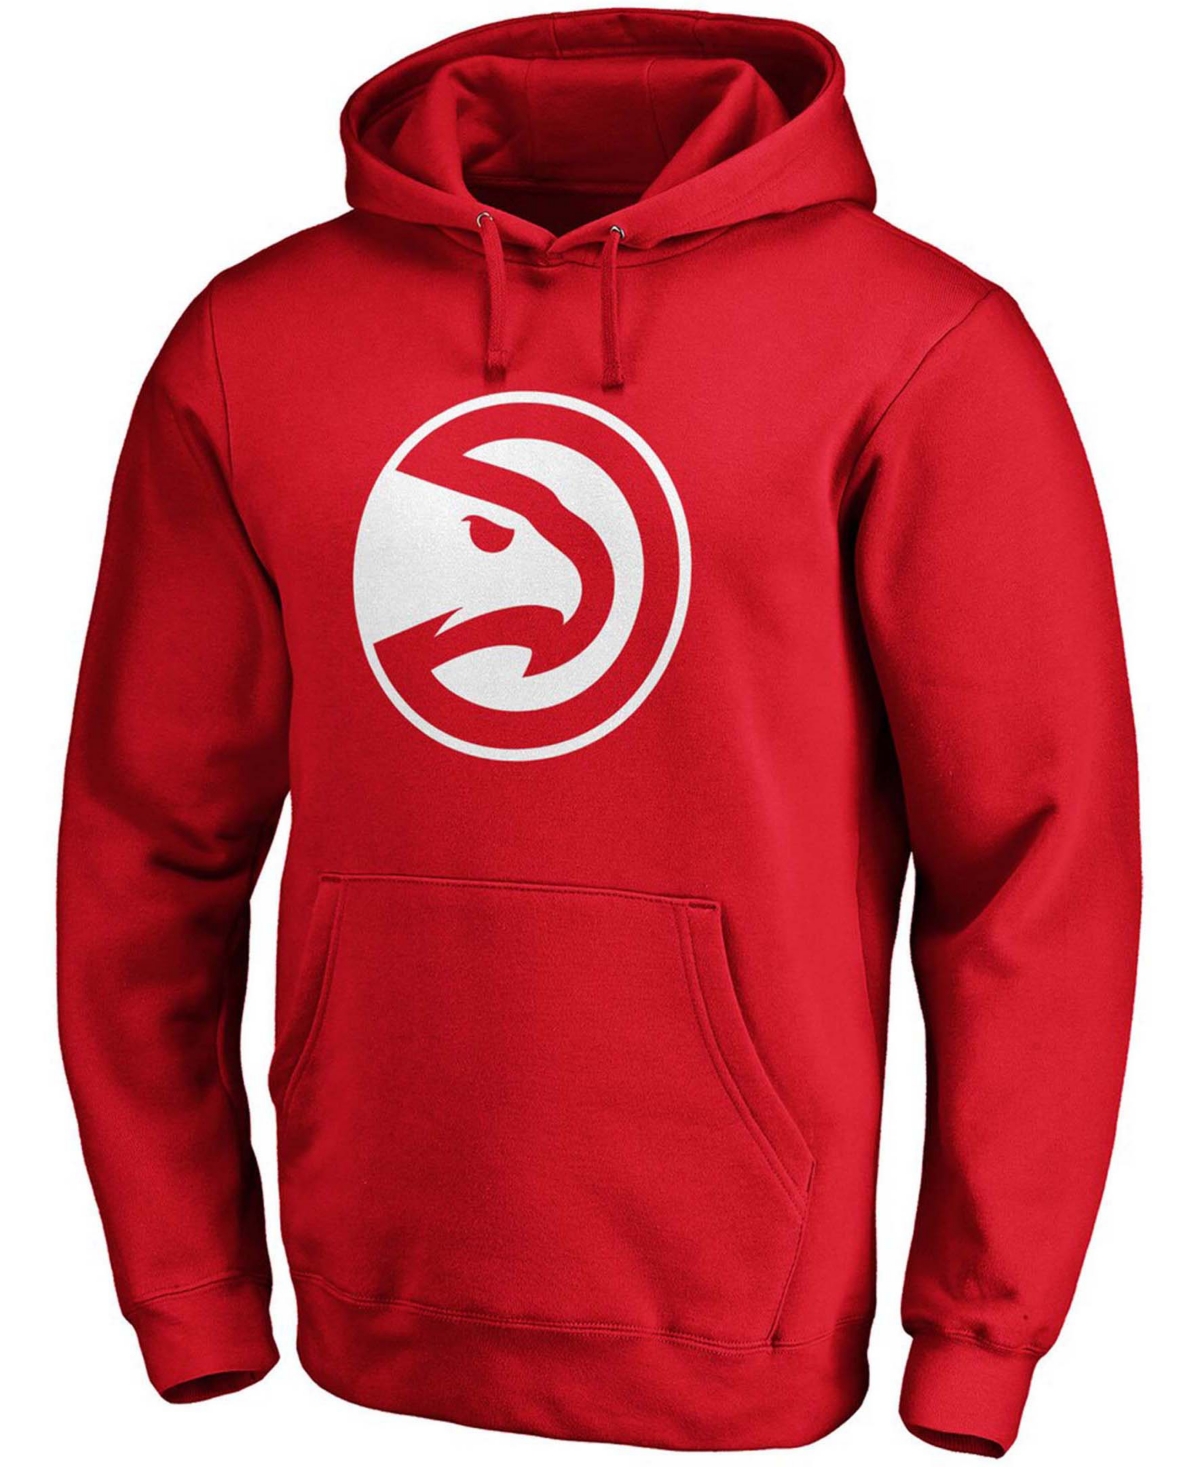 Shop Fanatics Men's Red Atlanta Hawks Primary Team Logo Pullover Hoodie